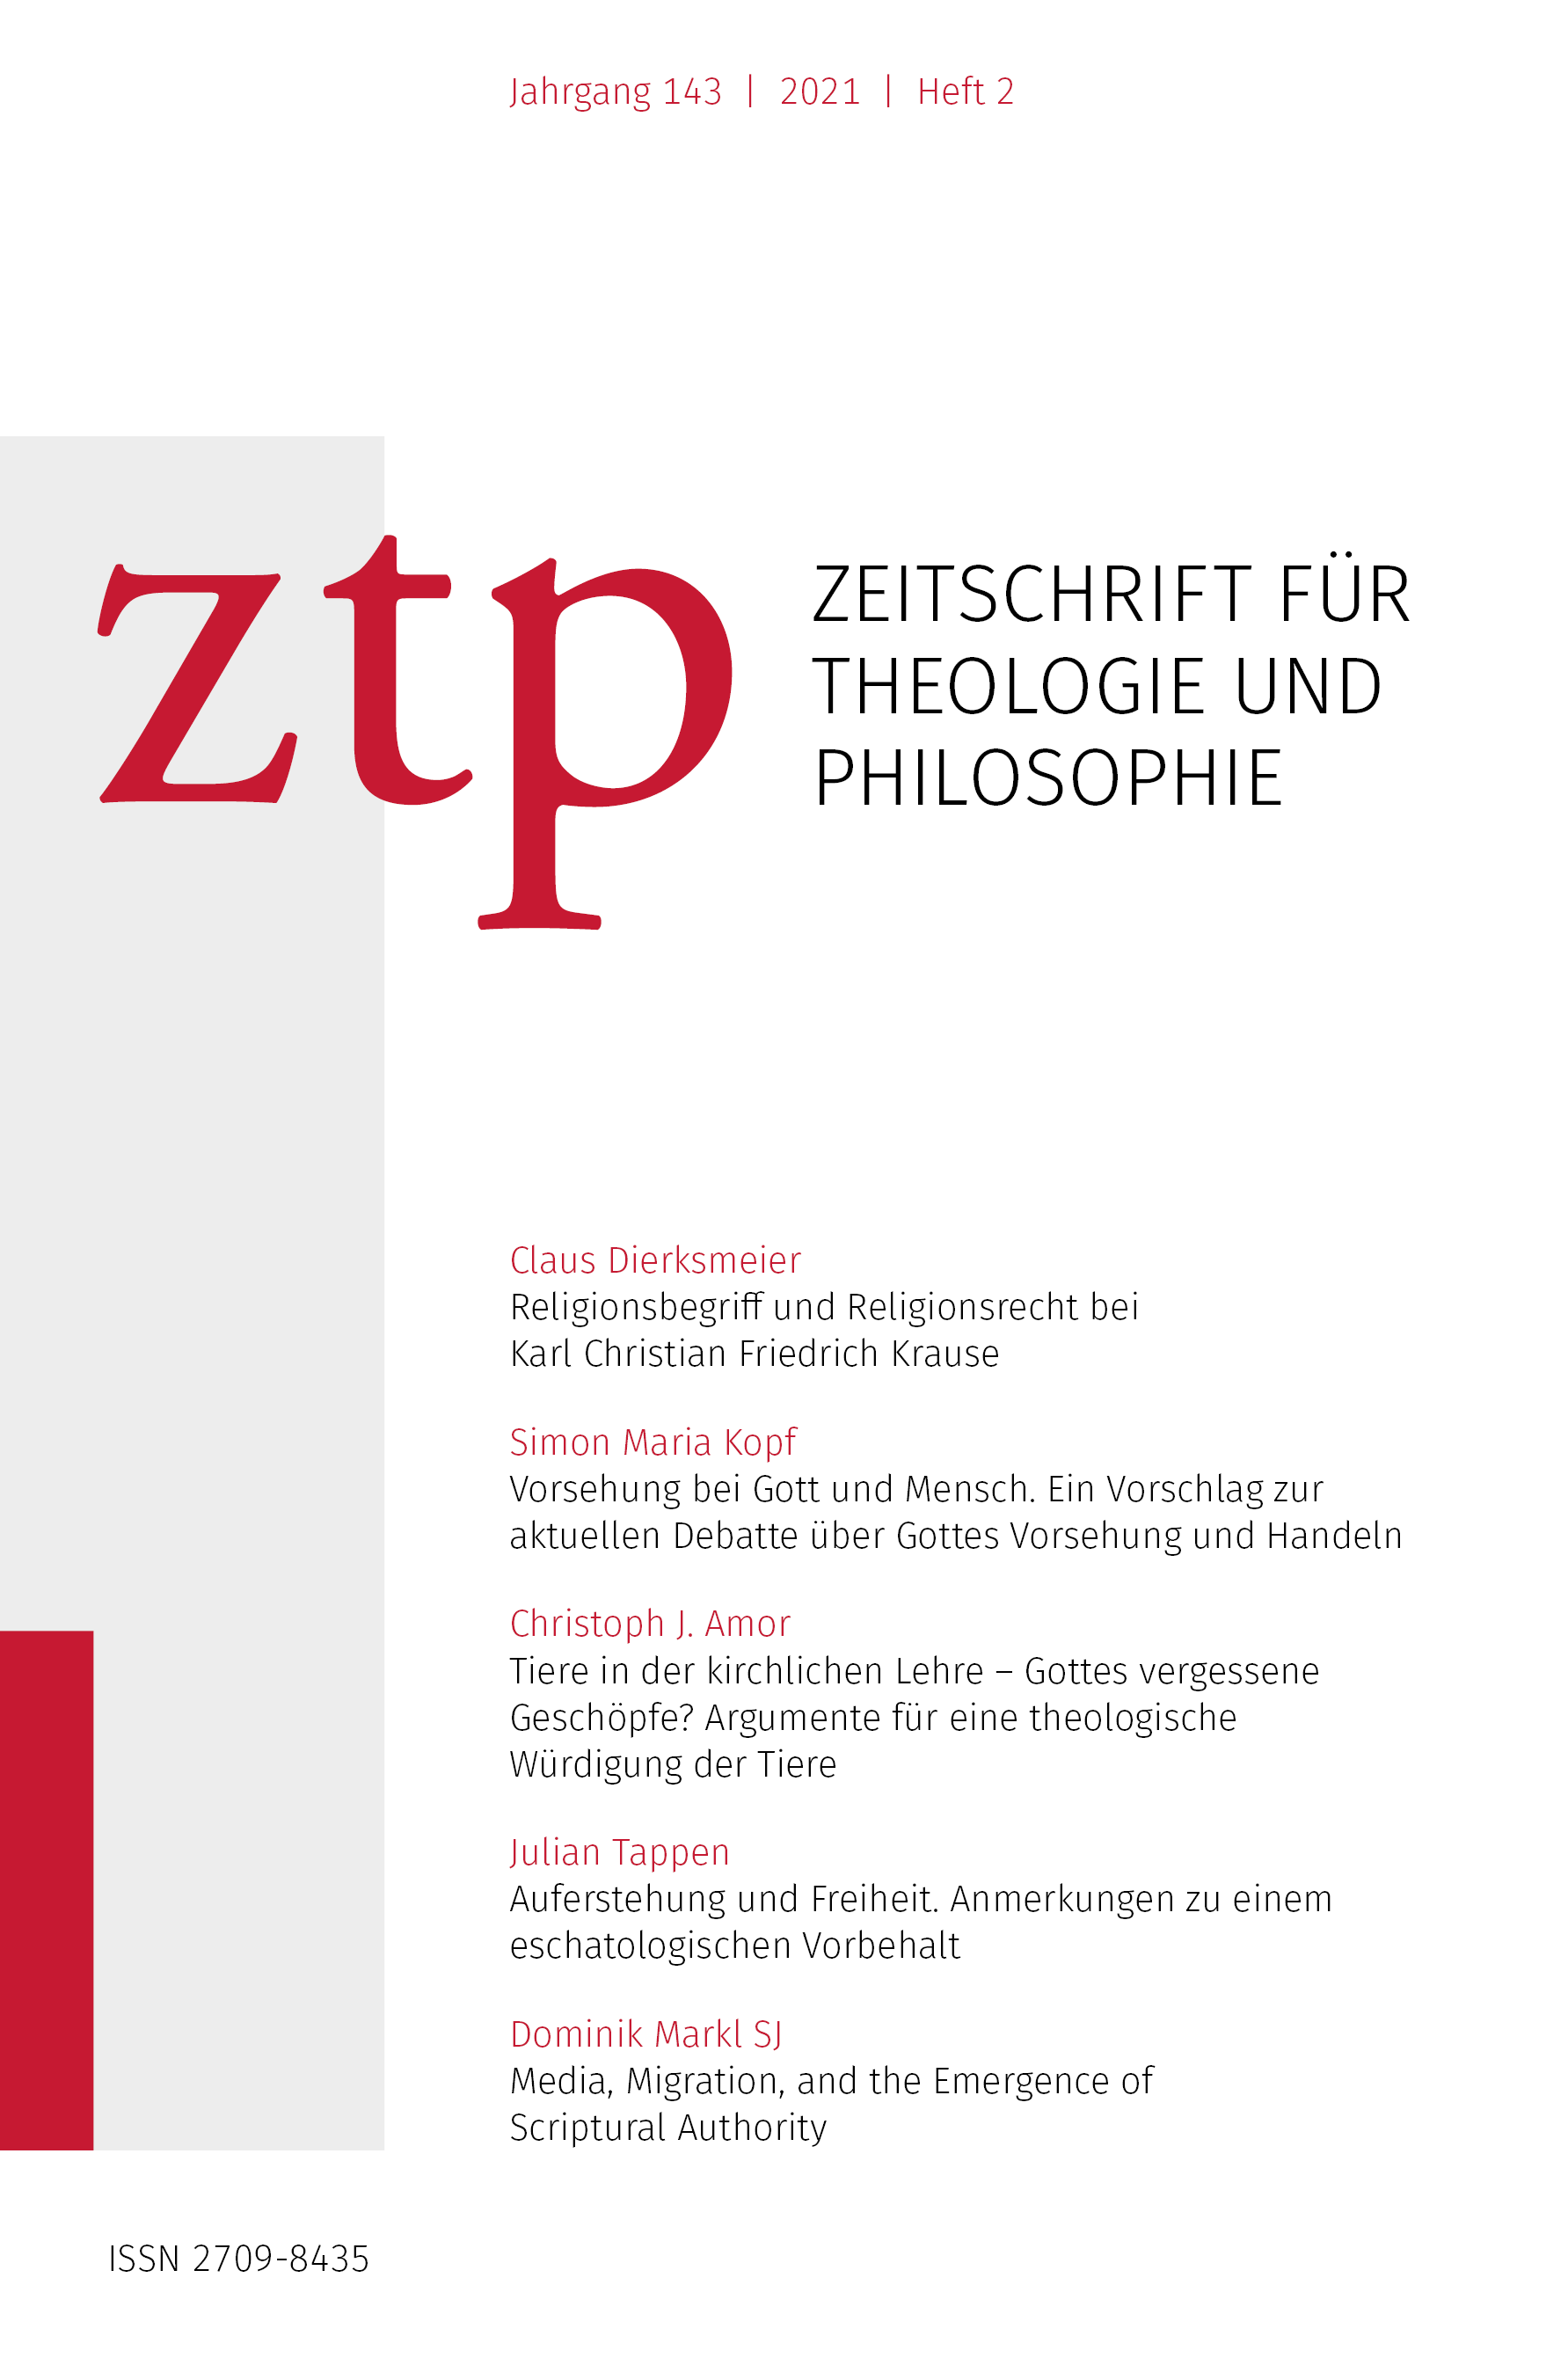 Titelseite der Zeitschrift für Theologie und Philosophie 143 (2021) 2